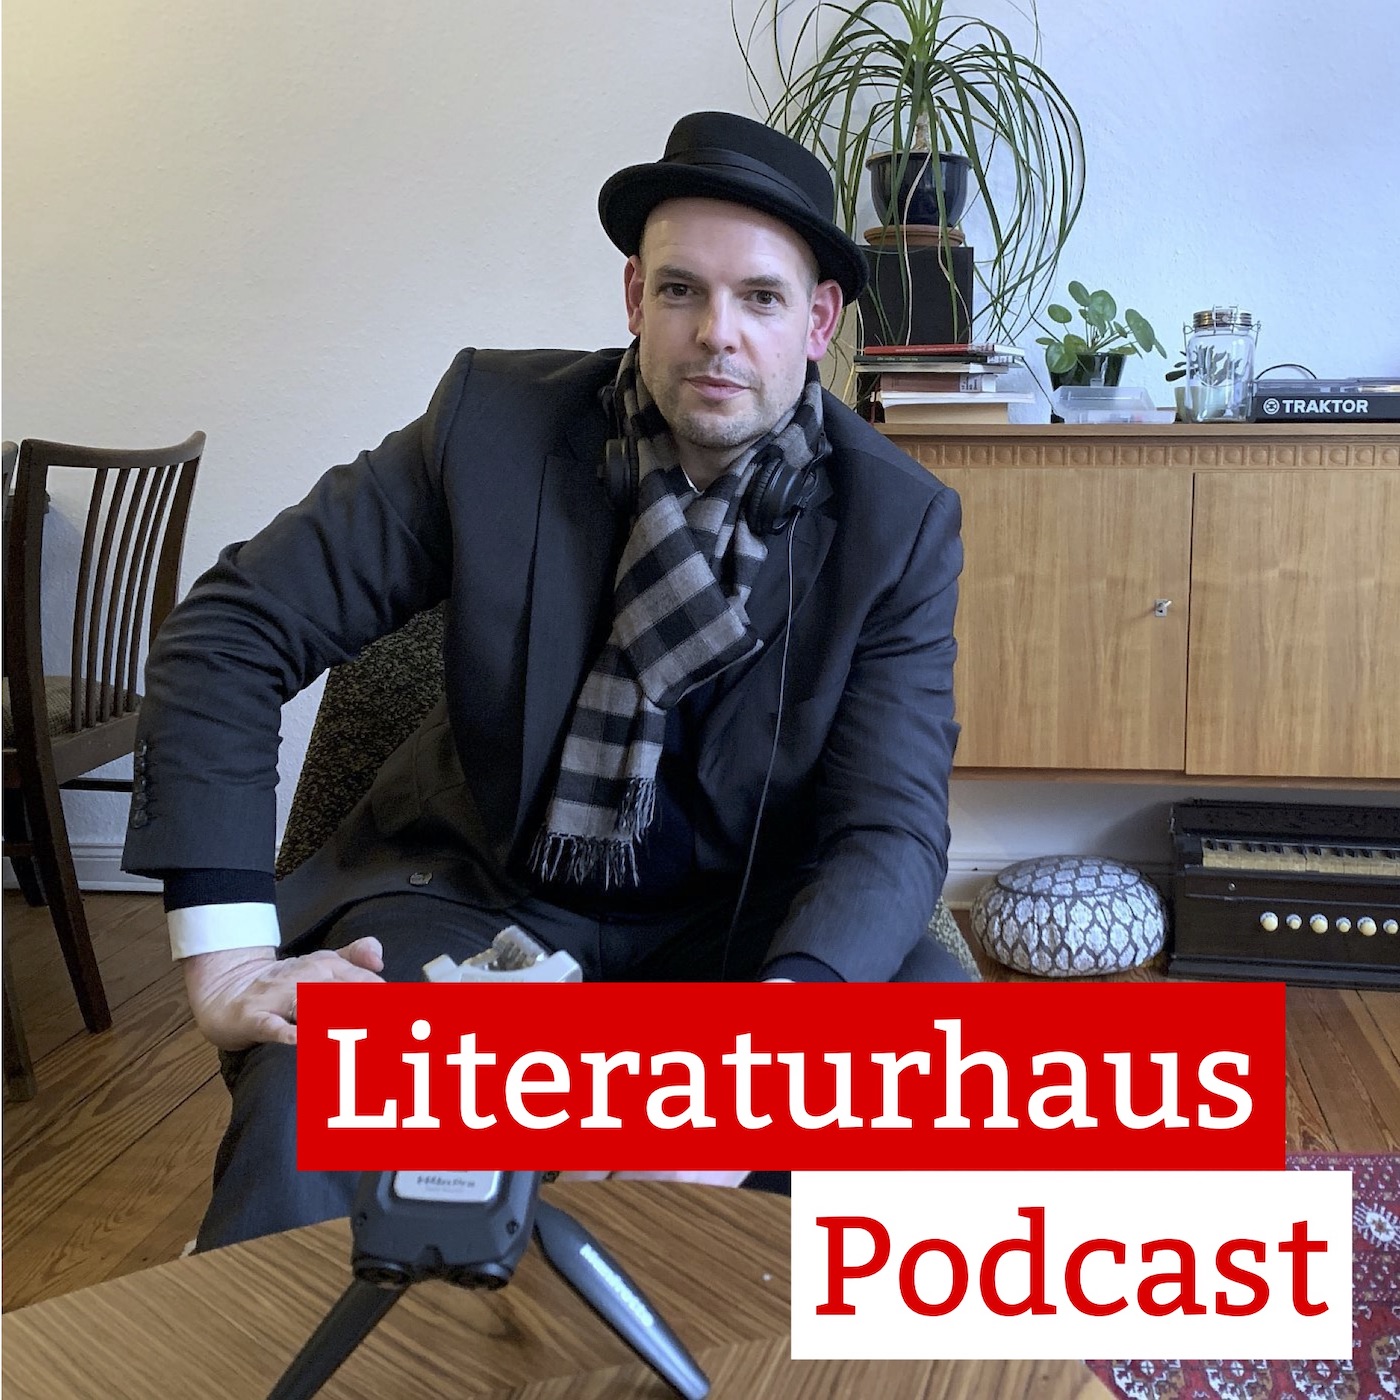 Foto des Slam-Poeten Bas Böttcher mit dem Podcast-Schriftzug